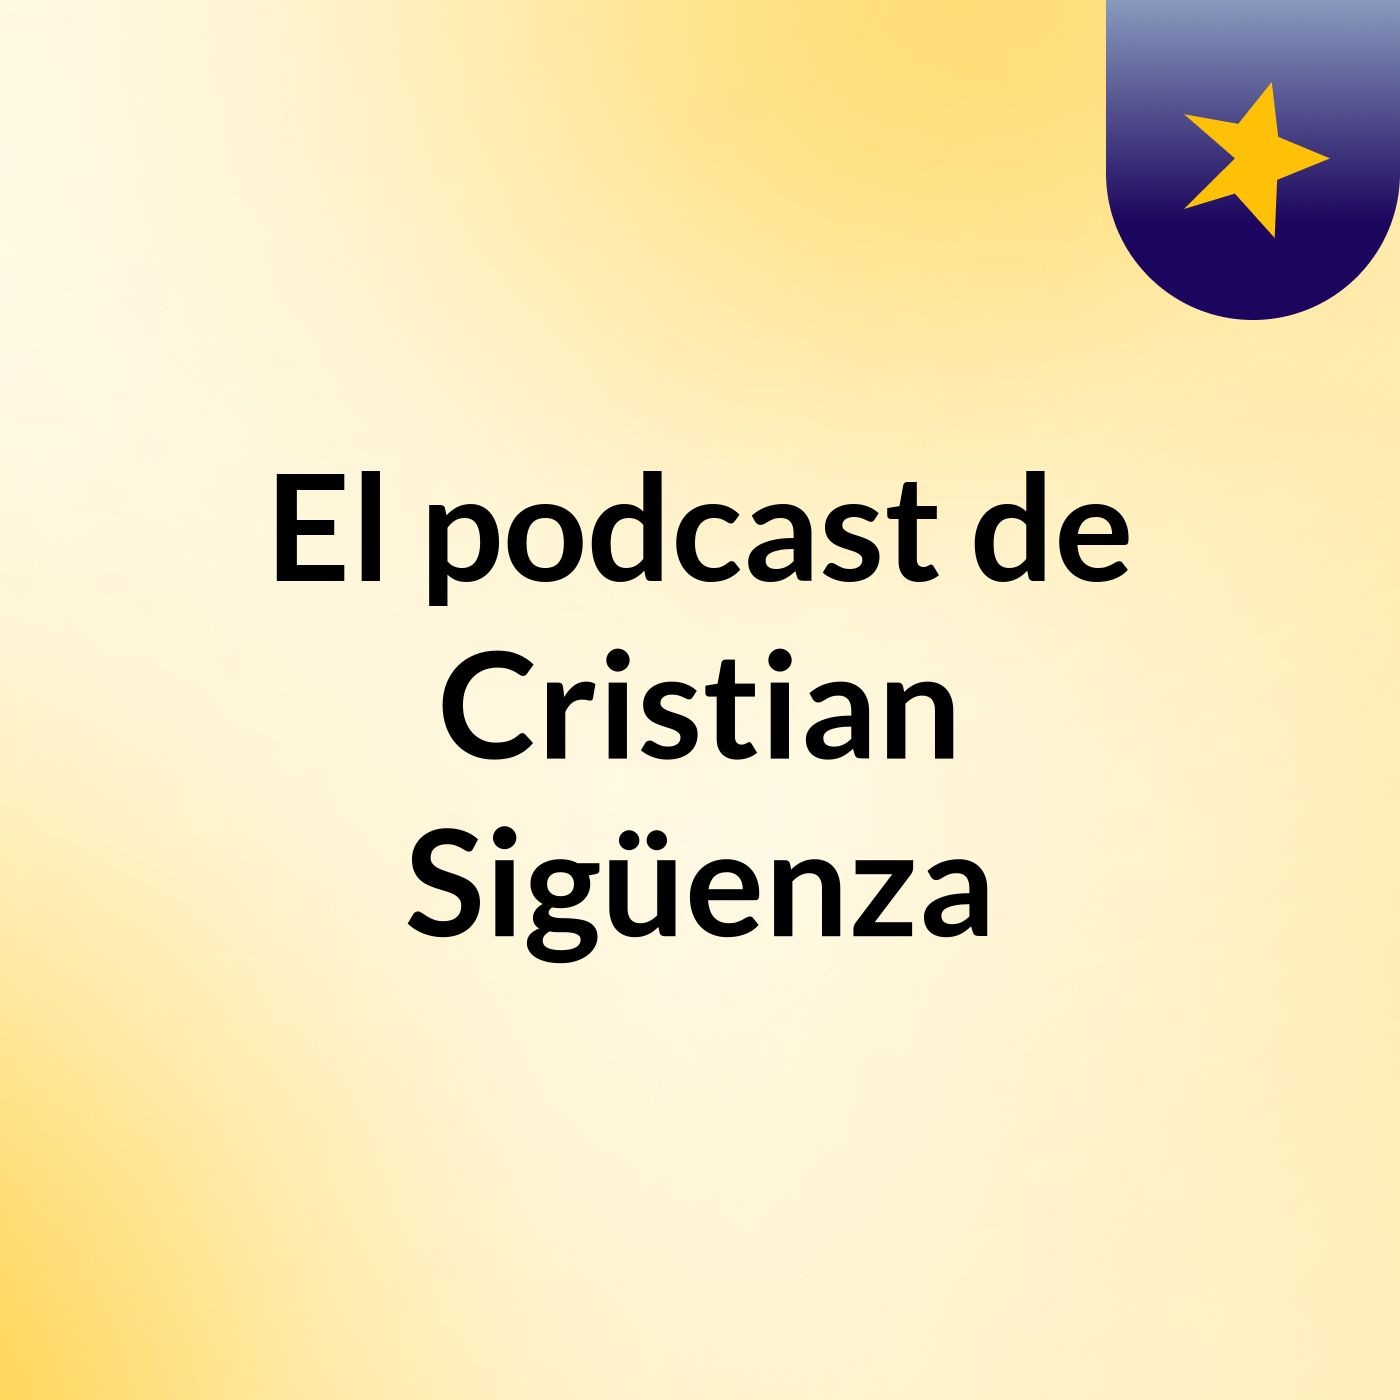 El podcast de Cristian Sigüenza